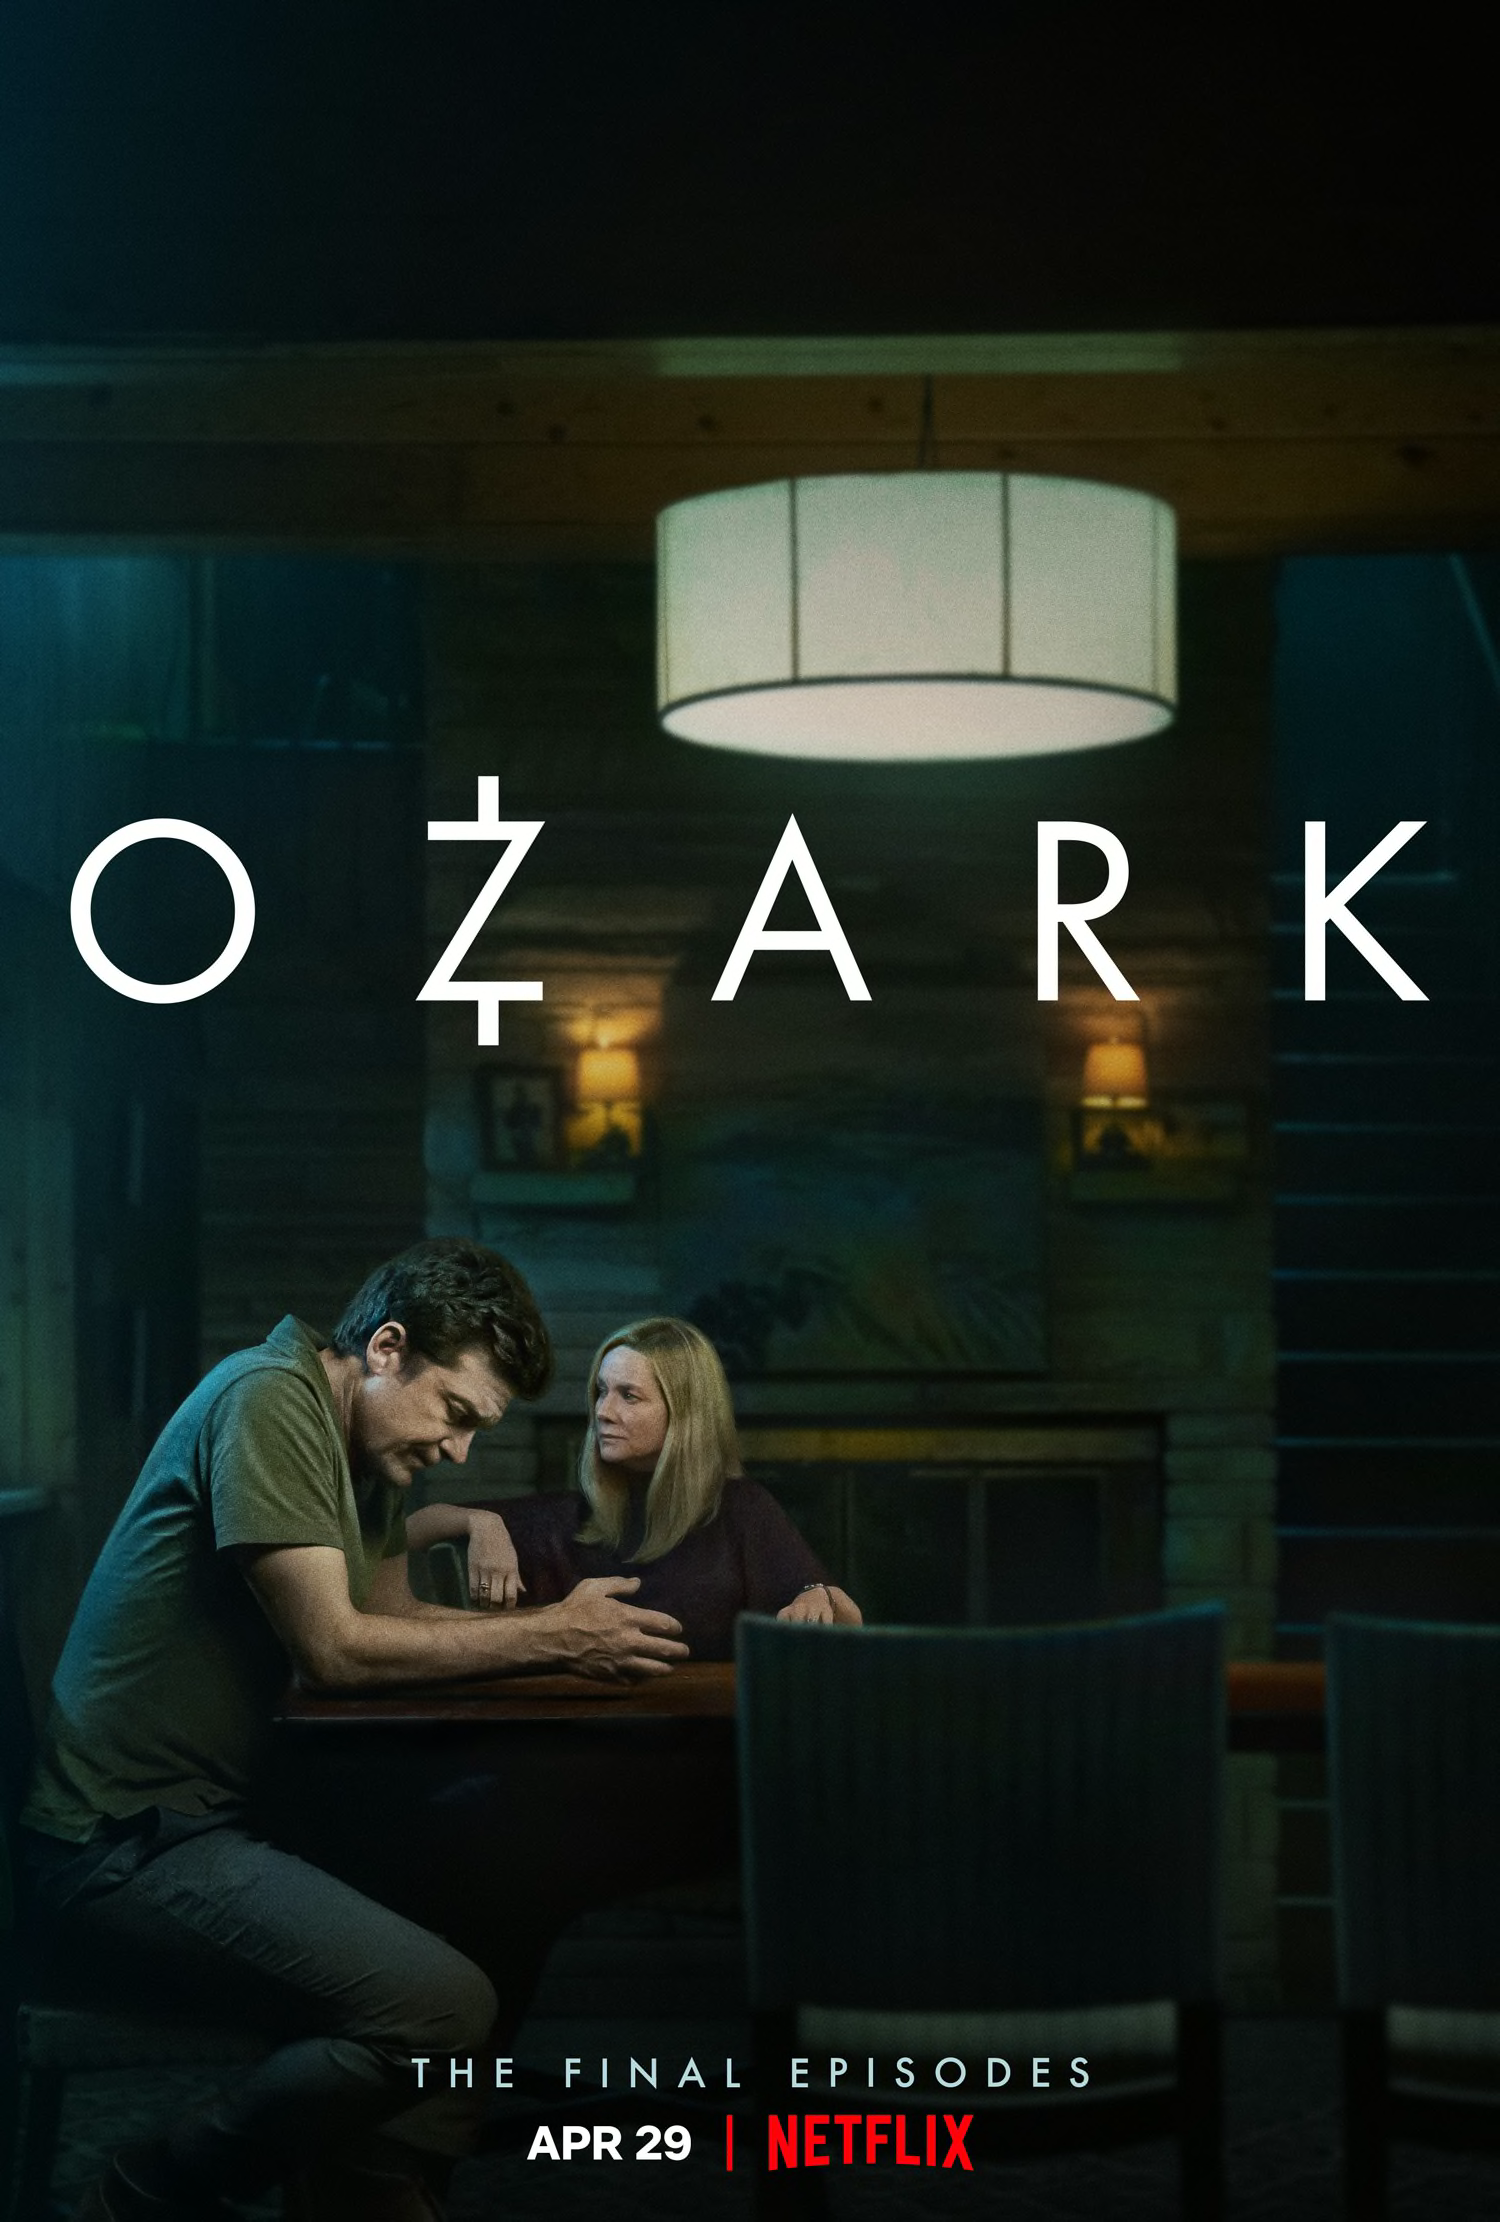 Ozark season 4 part 2